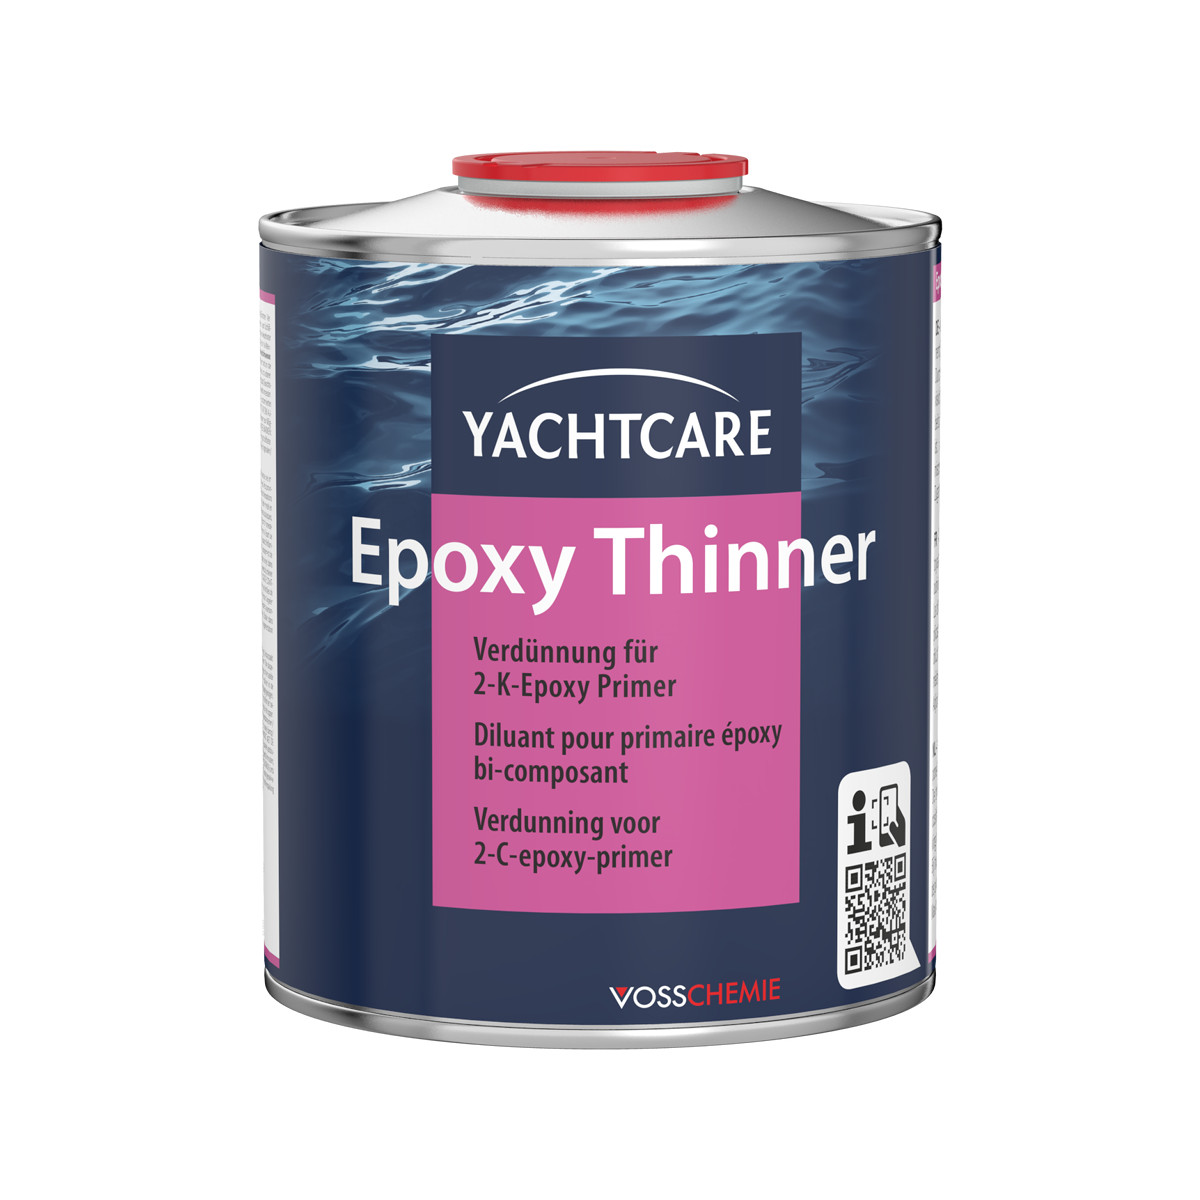 Yachtcare Epoxy Thinner diluant pour primaire époxy bi-composant